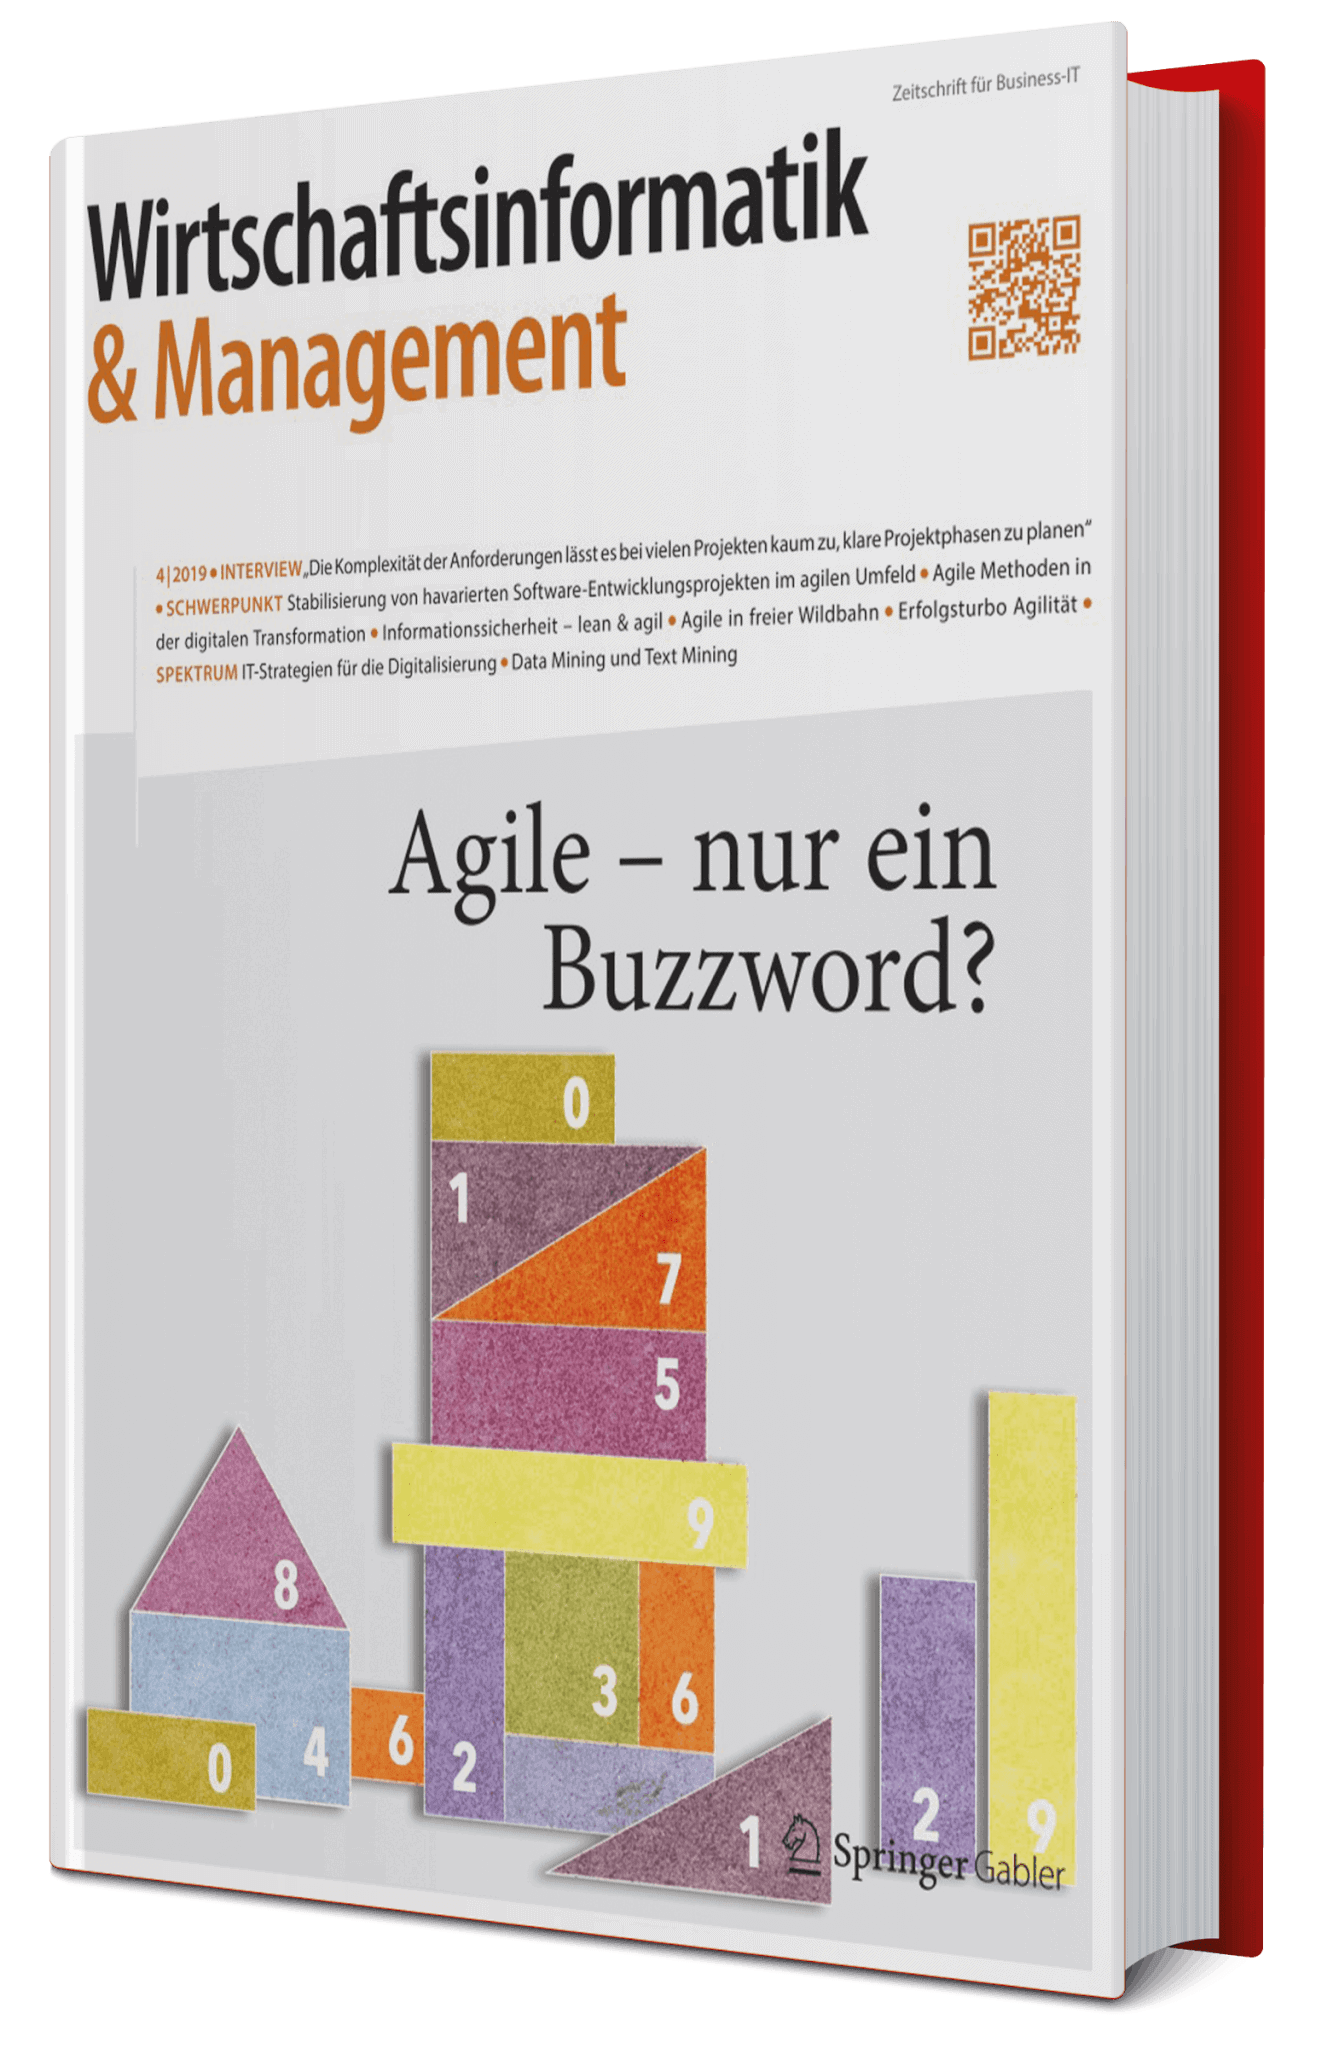 Wirtschaftsinformatik & Management 4/2019 "Agile - nur ein Buzzword?" - Ausgabe 4/2019 © 2019 Springer Professional - Springer Fachmedien Wiesbaden GmbH